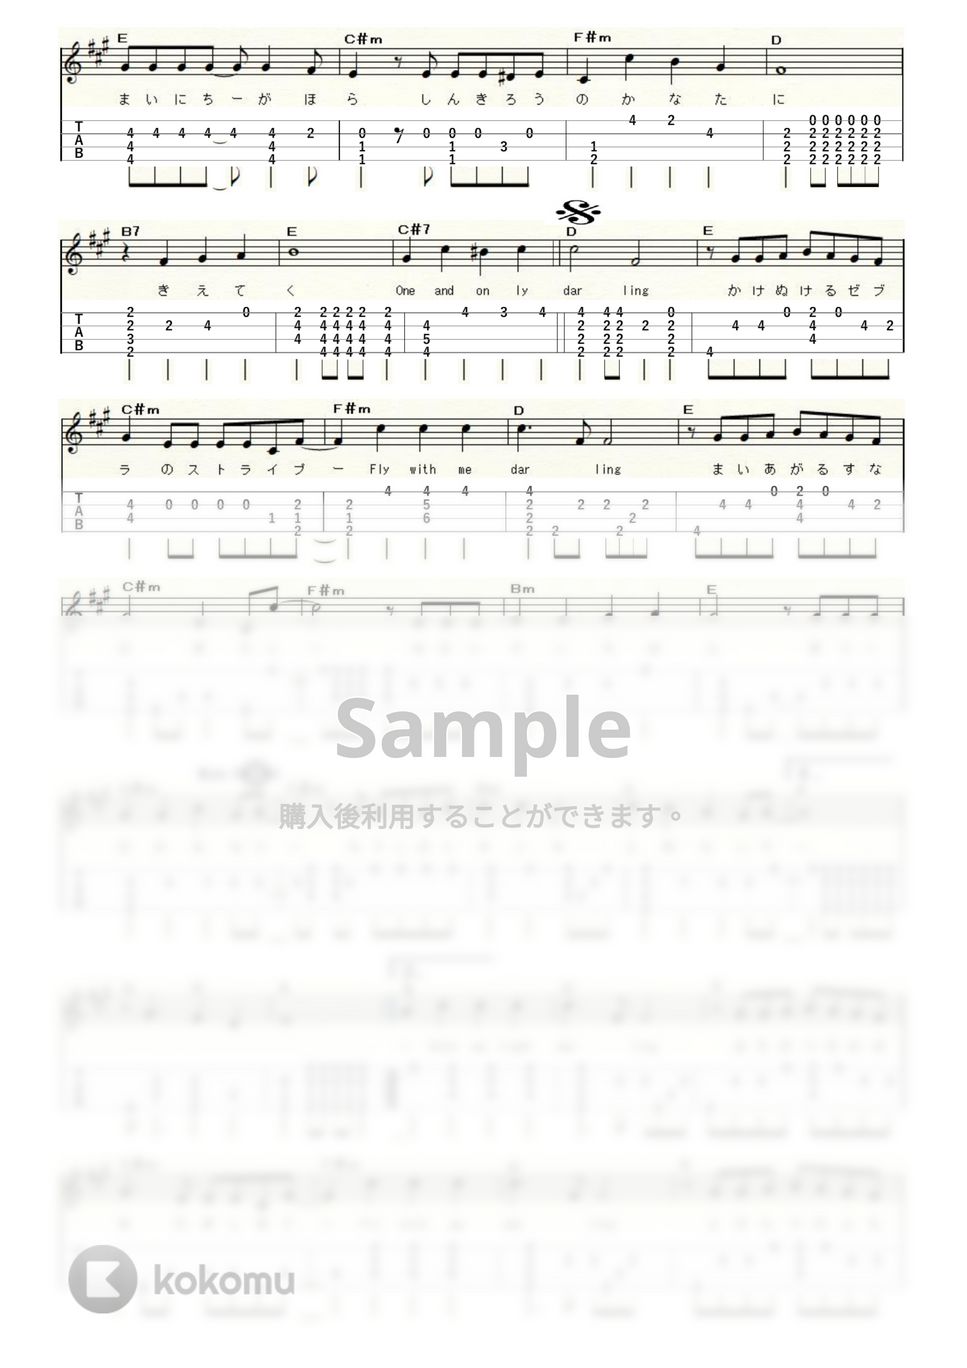 プリンセス プリンセス - 世界でいちばん熱い夏 (Low-G) by ukulelepapa